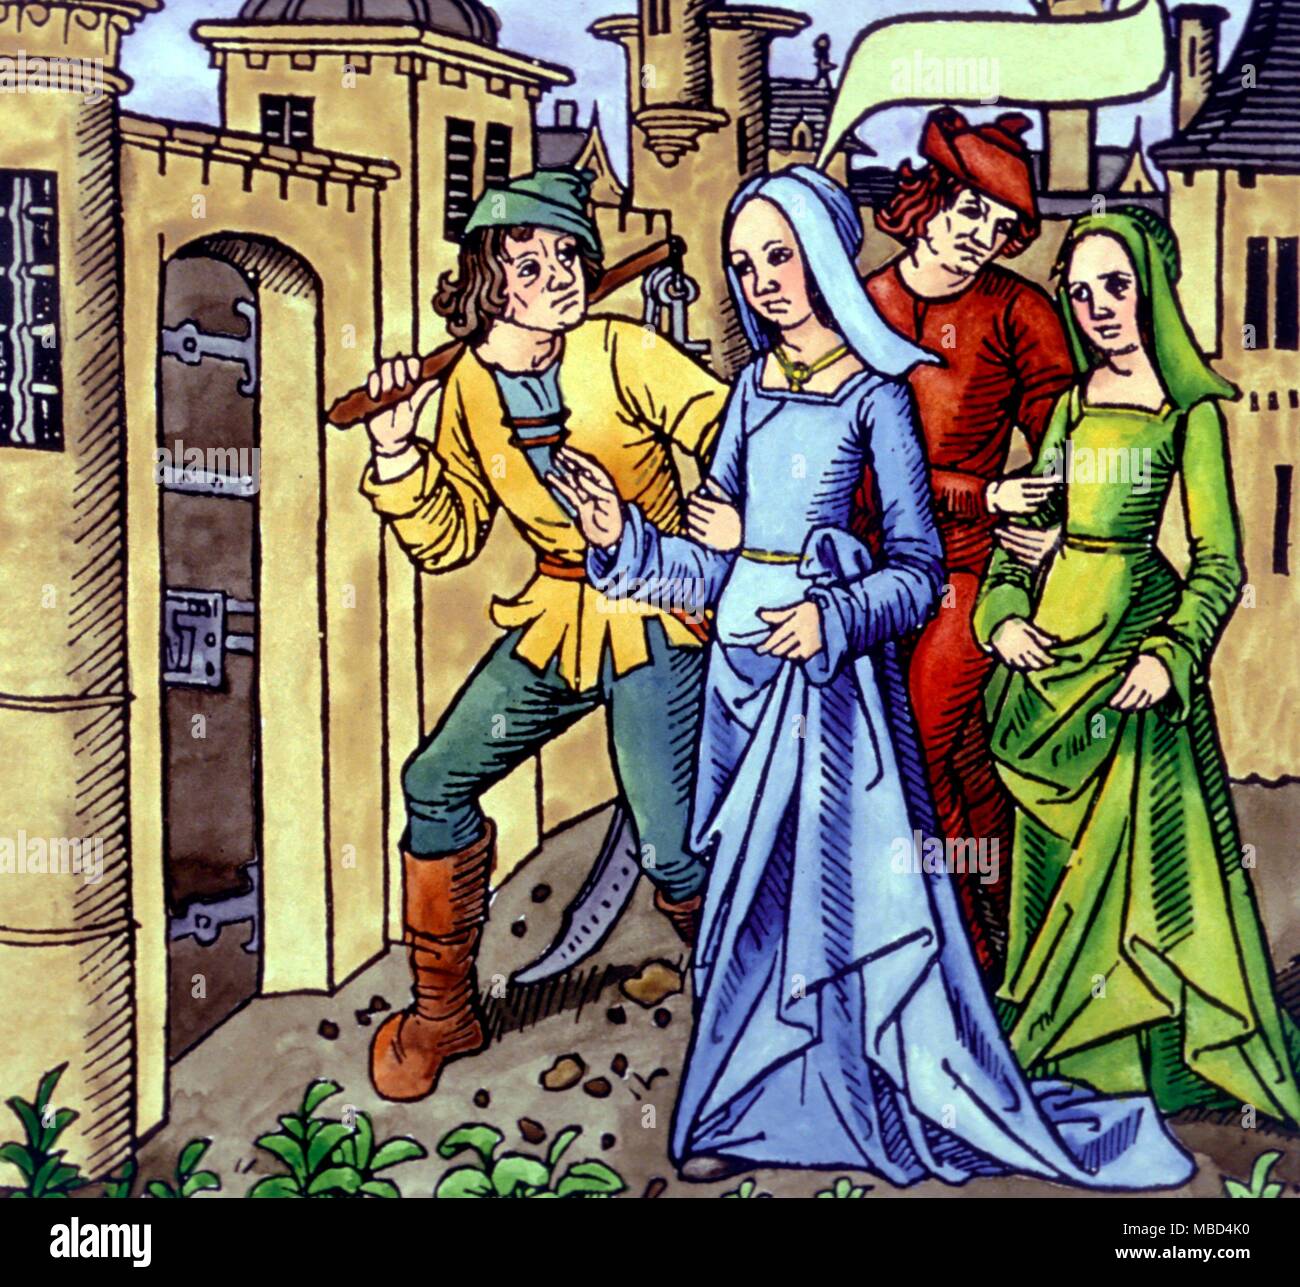 Joan of Arc capturé et conduit à la prison. Ici elle est habillée comme une jeune fille, bien qu'elle normalement habillé comme un homme. Gravure sur bois de circa 1500. - Banque D'Images